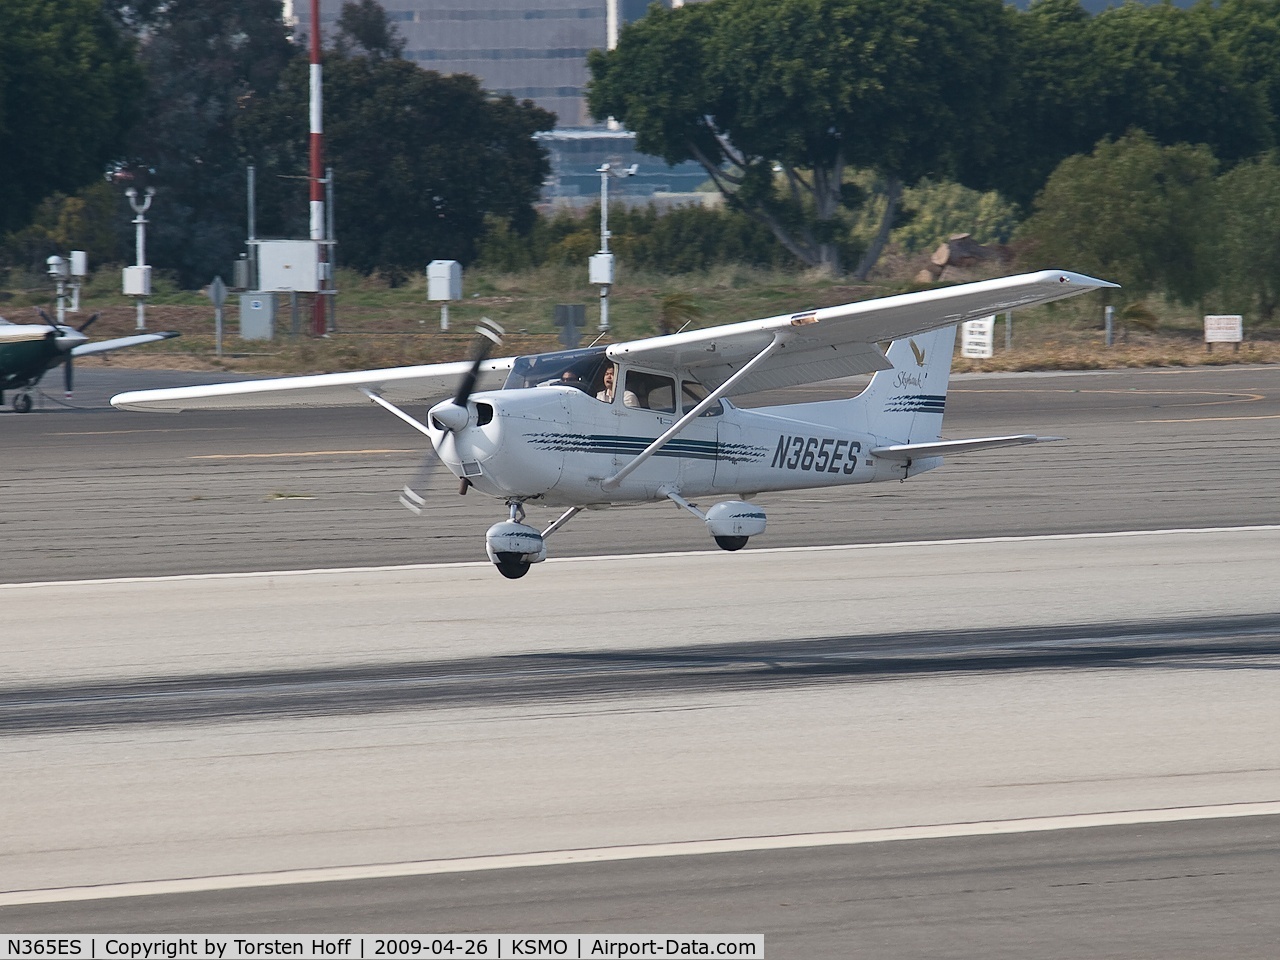 N365ES, 1997 Cessna 172R C/N 17280023, N365ES departing from RWY 21